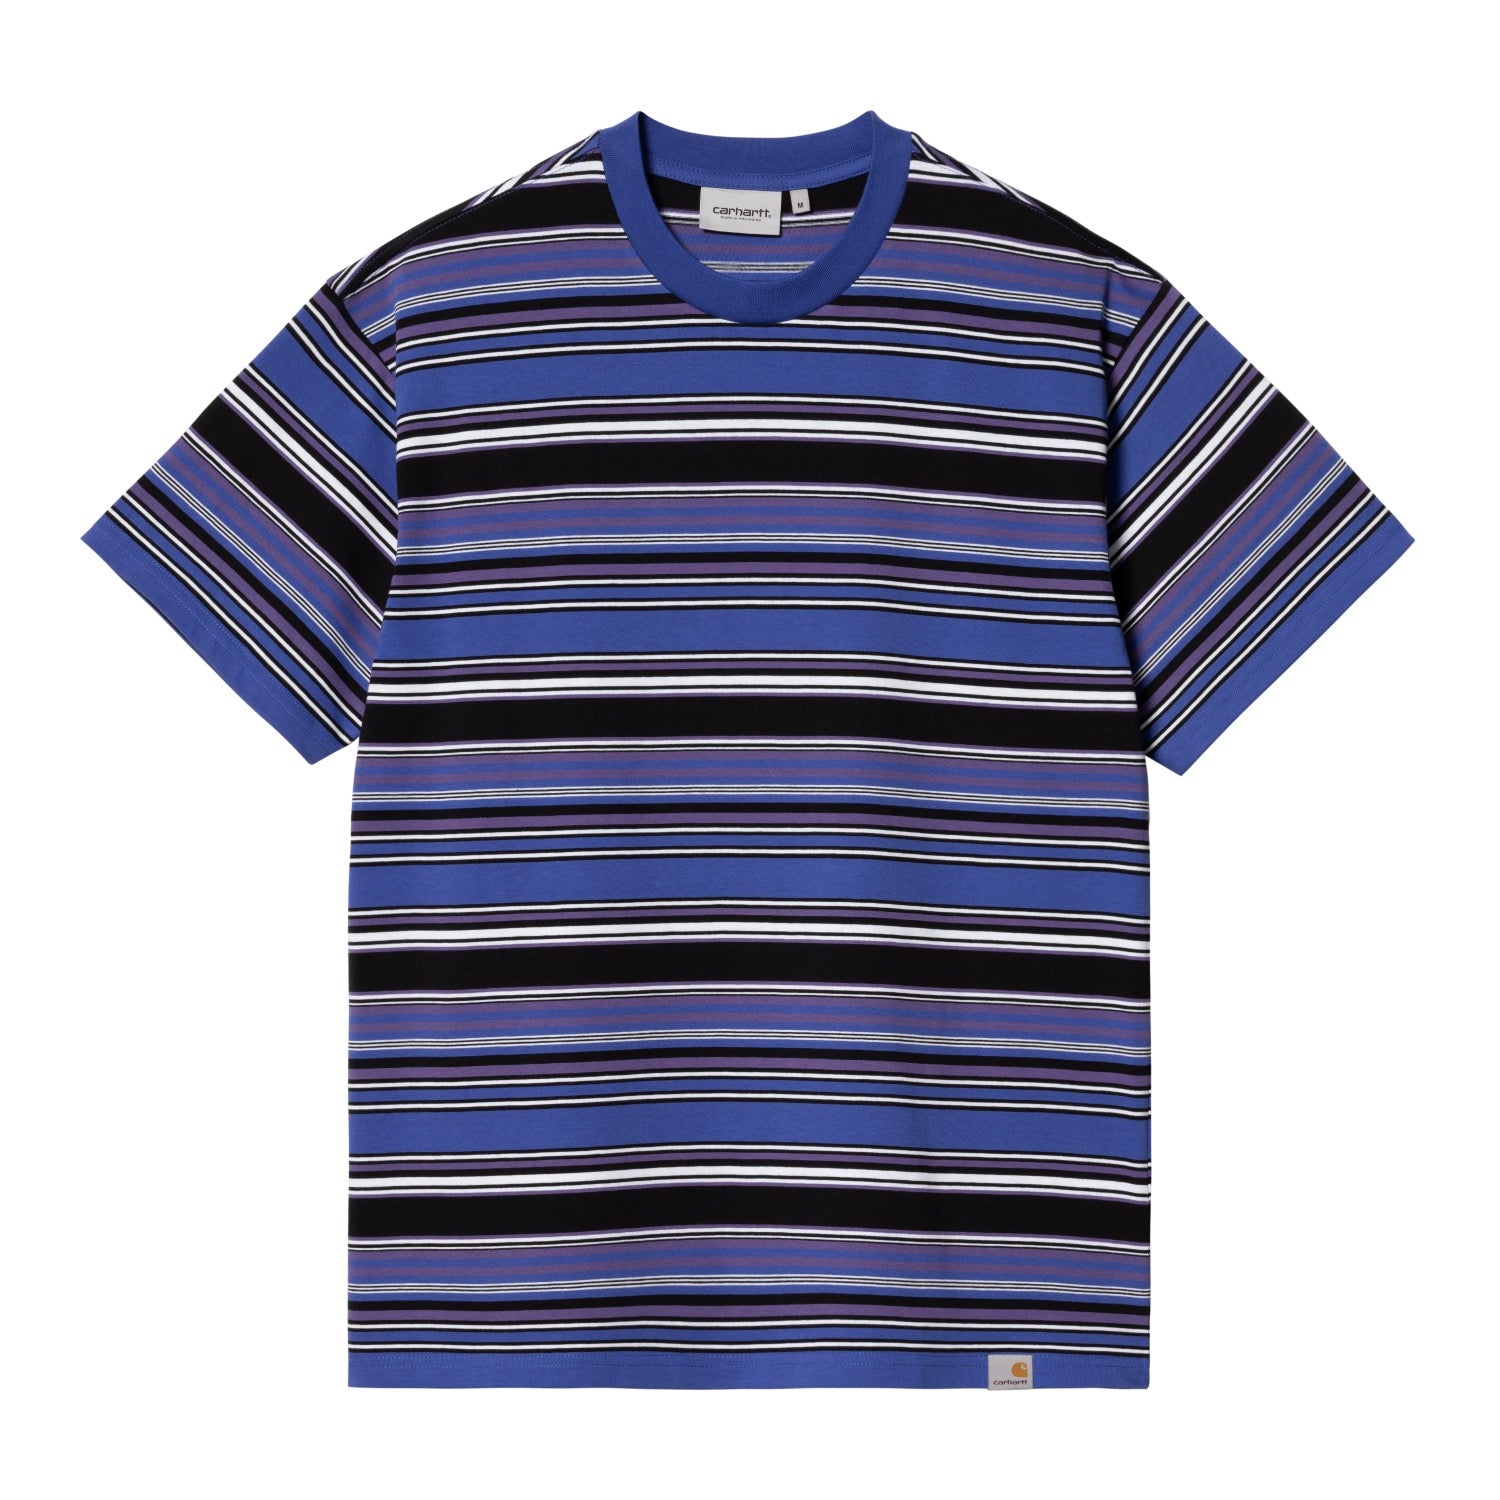 ショートスリーブラファティTシャツ | カーハート公式通販 - Carhartt 